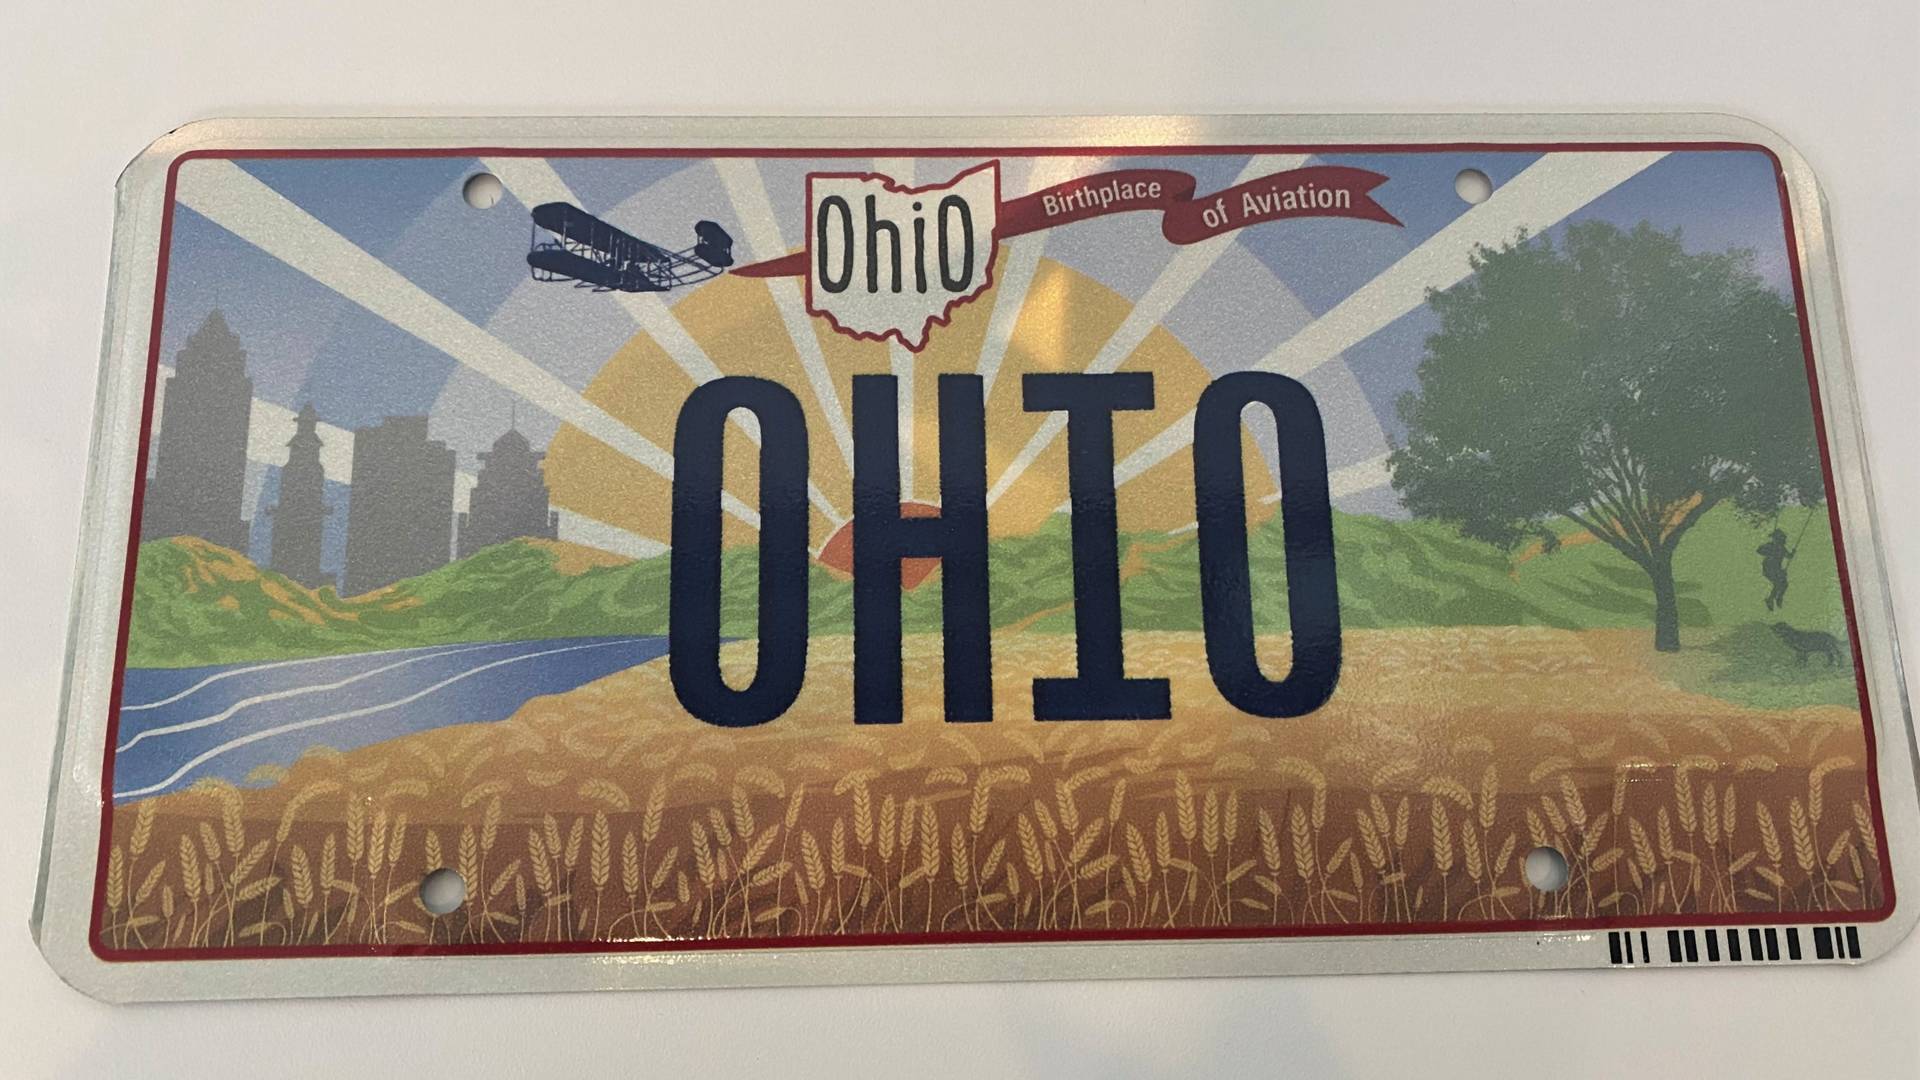 Ohio állam új rendszámtáblát készített a Wright fivérek emlékére, de apró hiba csúszott a dizájnra